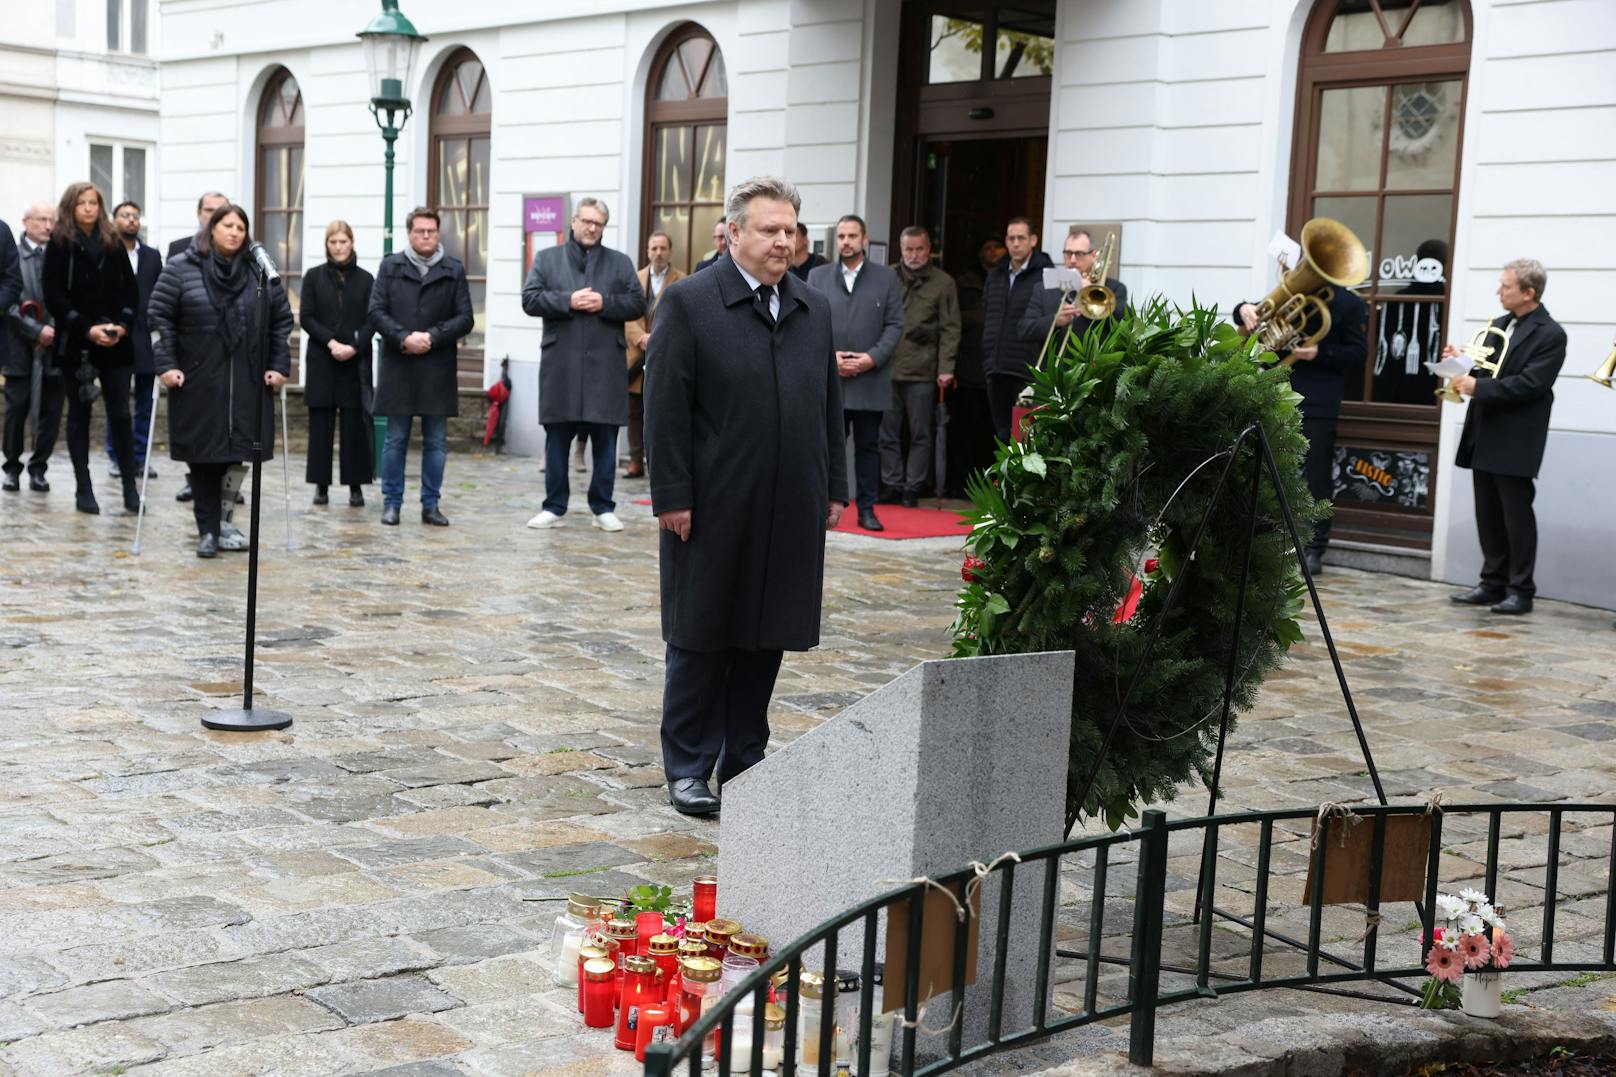 Am ersten Jahrestag des Terror-Anschlags in der Wiener Innenstadt am 2. November 2020 gedachten Hinterbliebene und die Wiener Stadtregierung  den Opfern. Stadtchef Michael Ludwig legte einen Kranz nieder.